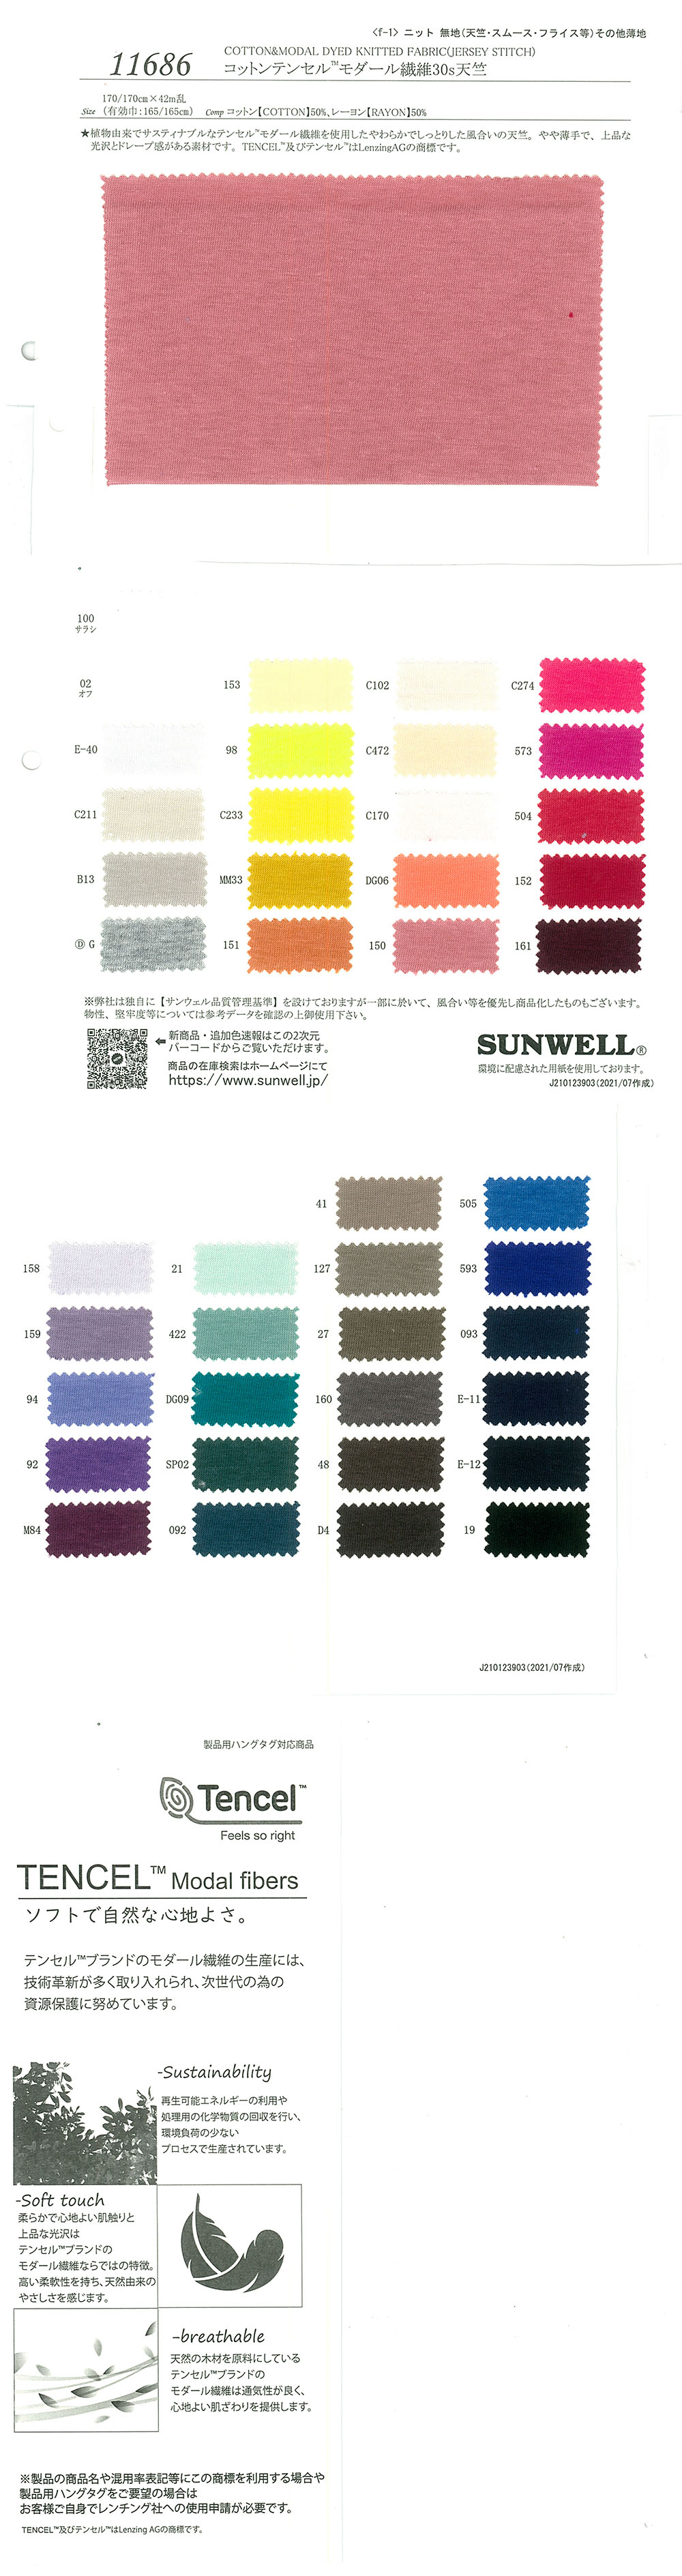 11686 Jersey Coton/Tencel™ Fibre Modale 30 Fils Simples[Fabrication De Textile] SUNWELL